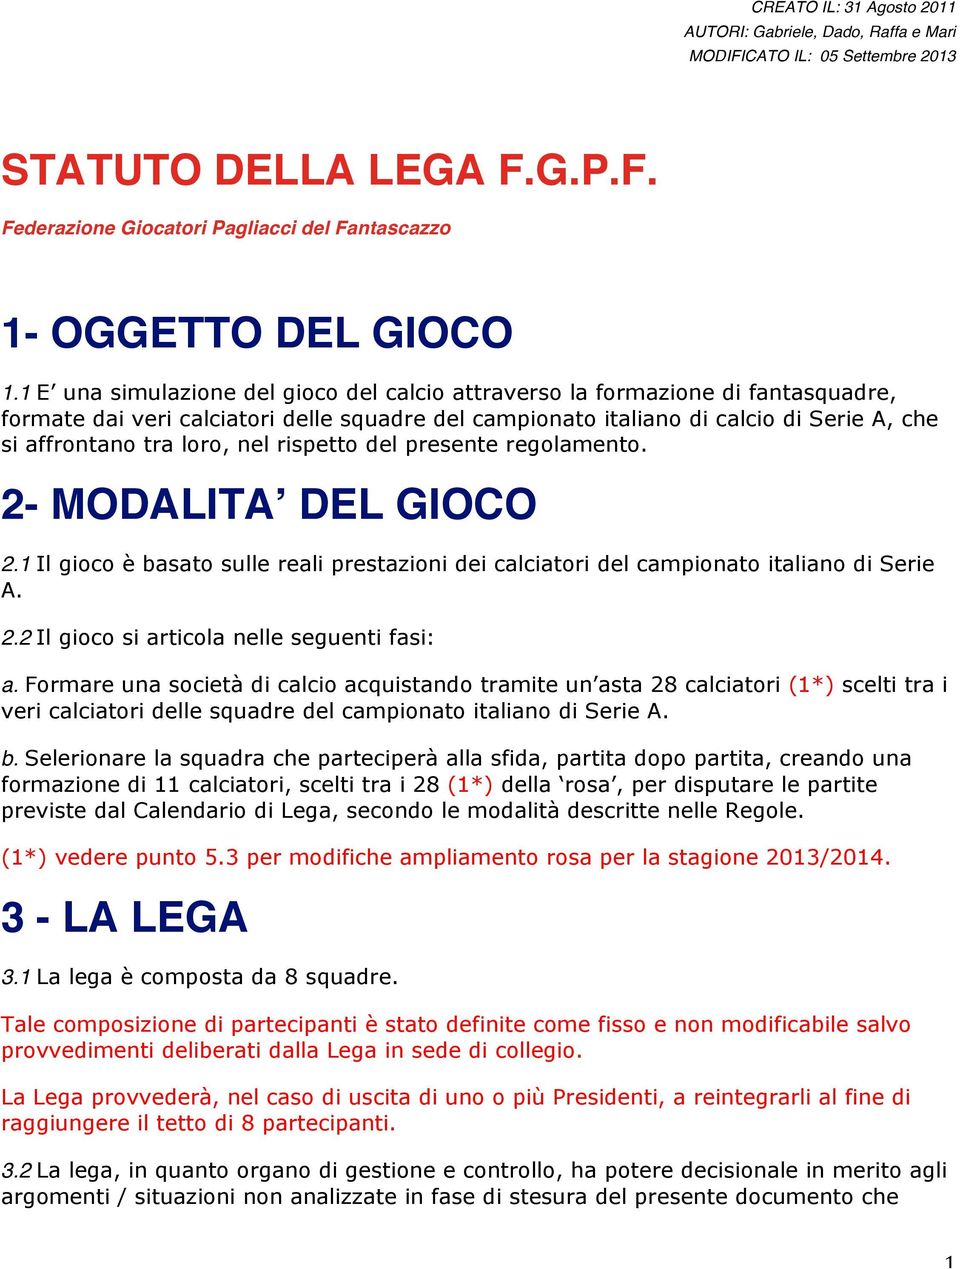 nel rispetto del presente regolamento. 2- MODALITA DEL GIOCO 2.1 Il gioco è basato sulle reali prestazioni dei calciatori del campionato italiano di Serie A. 2.2 Il gioco si articola nelle seguenti fasi: a.